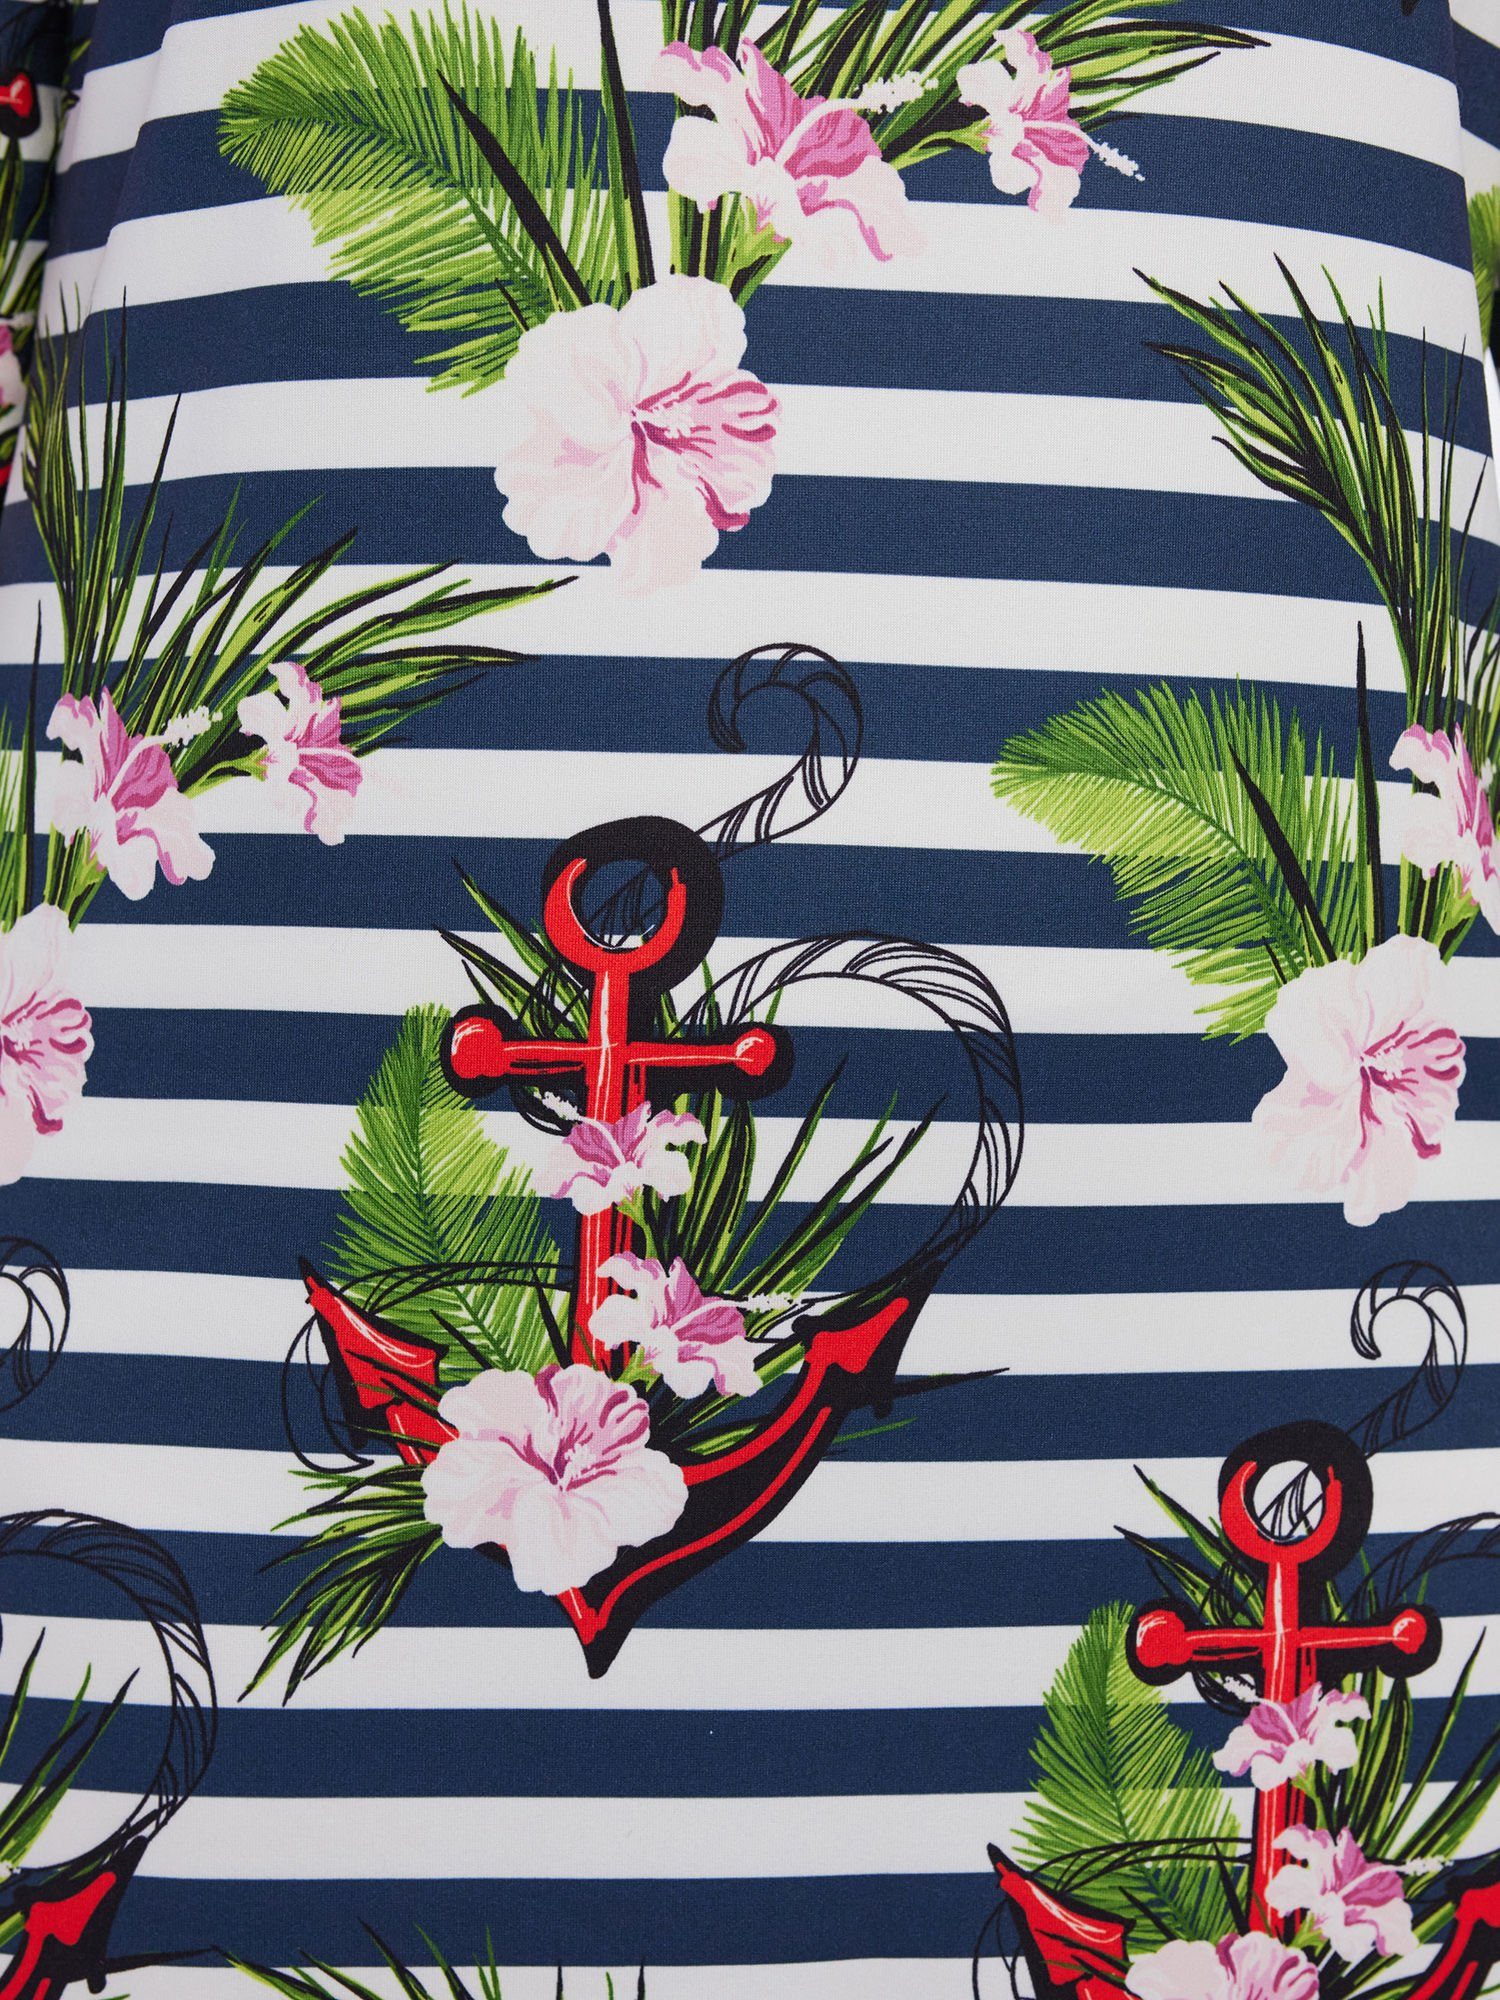 mit Streifen Nachthemd elastisch Belli Sleepwear Beaux und Blumenprint